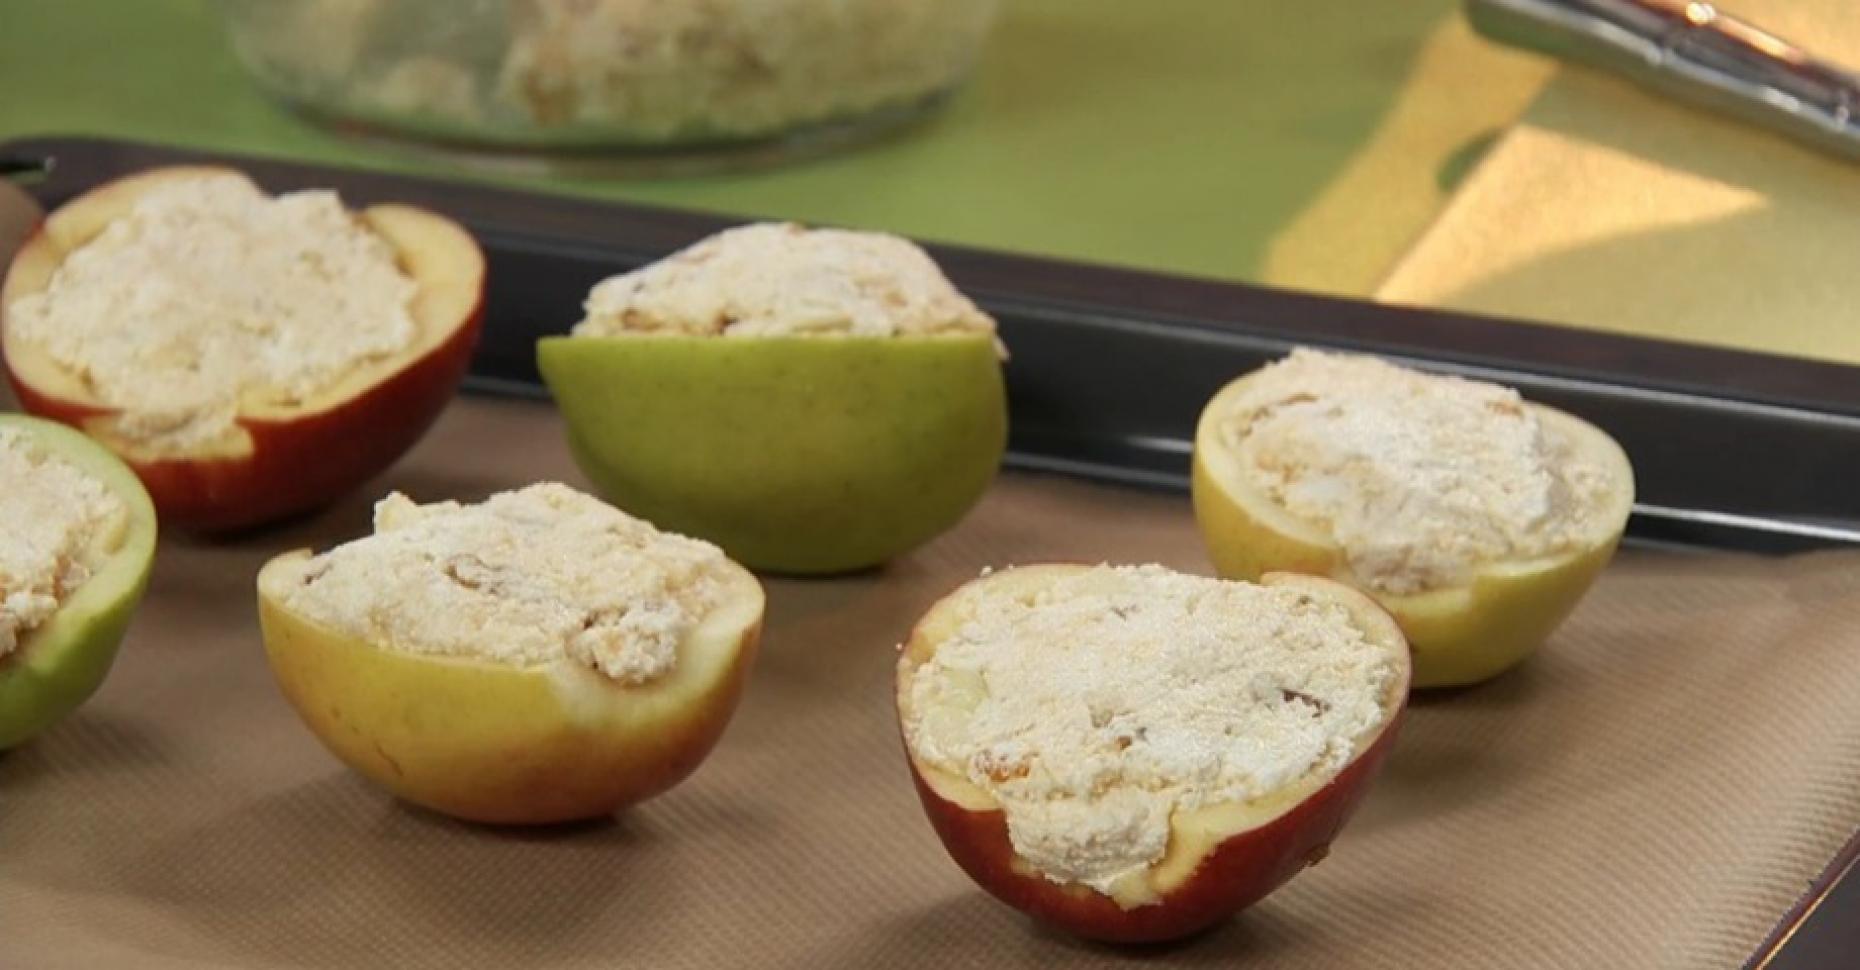 Яблоки фаршированные творогом запеченные в духовке рецепт с фото